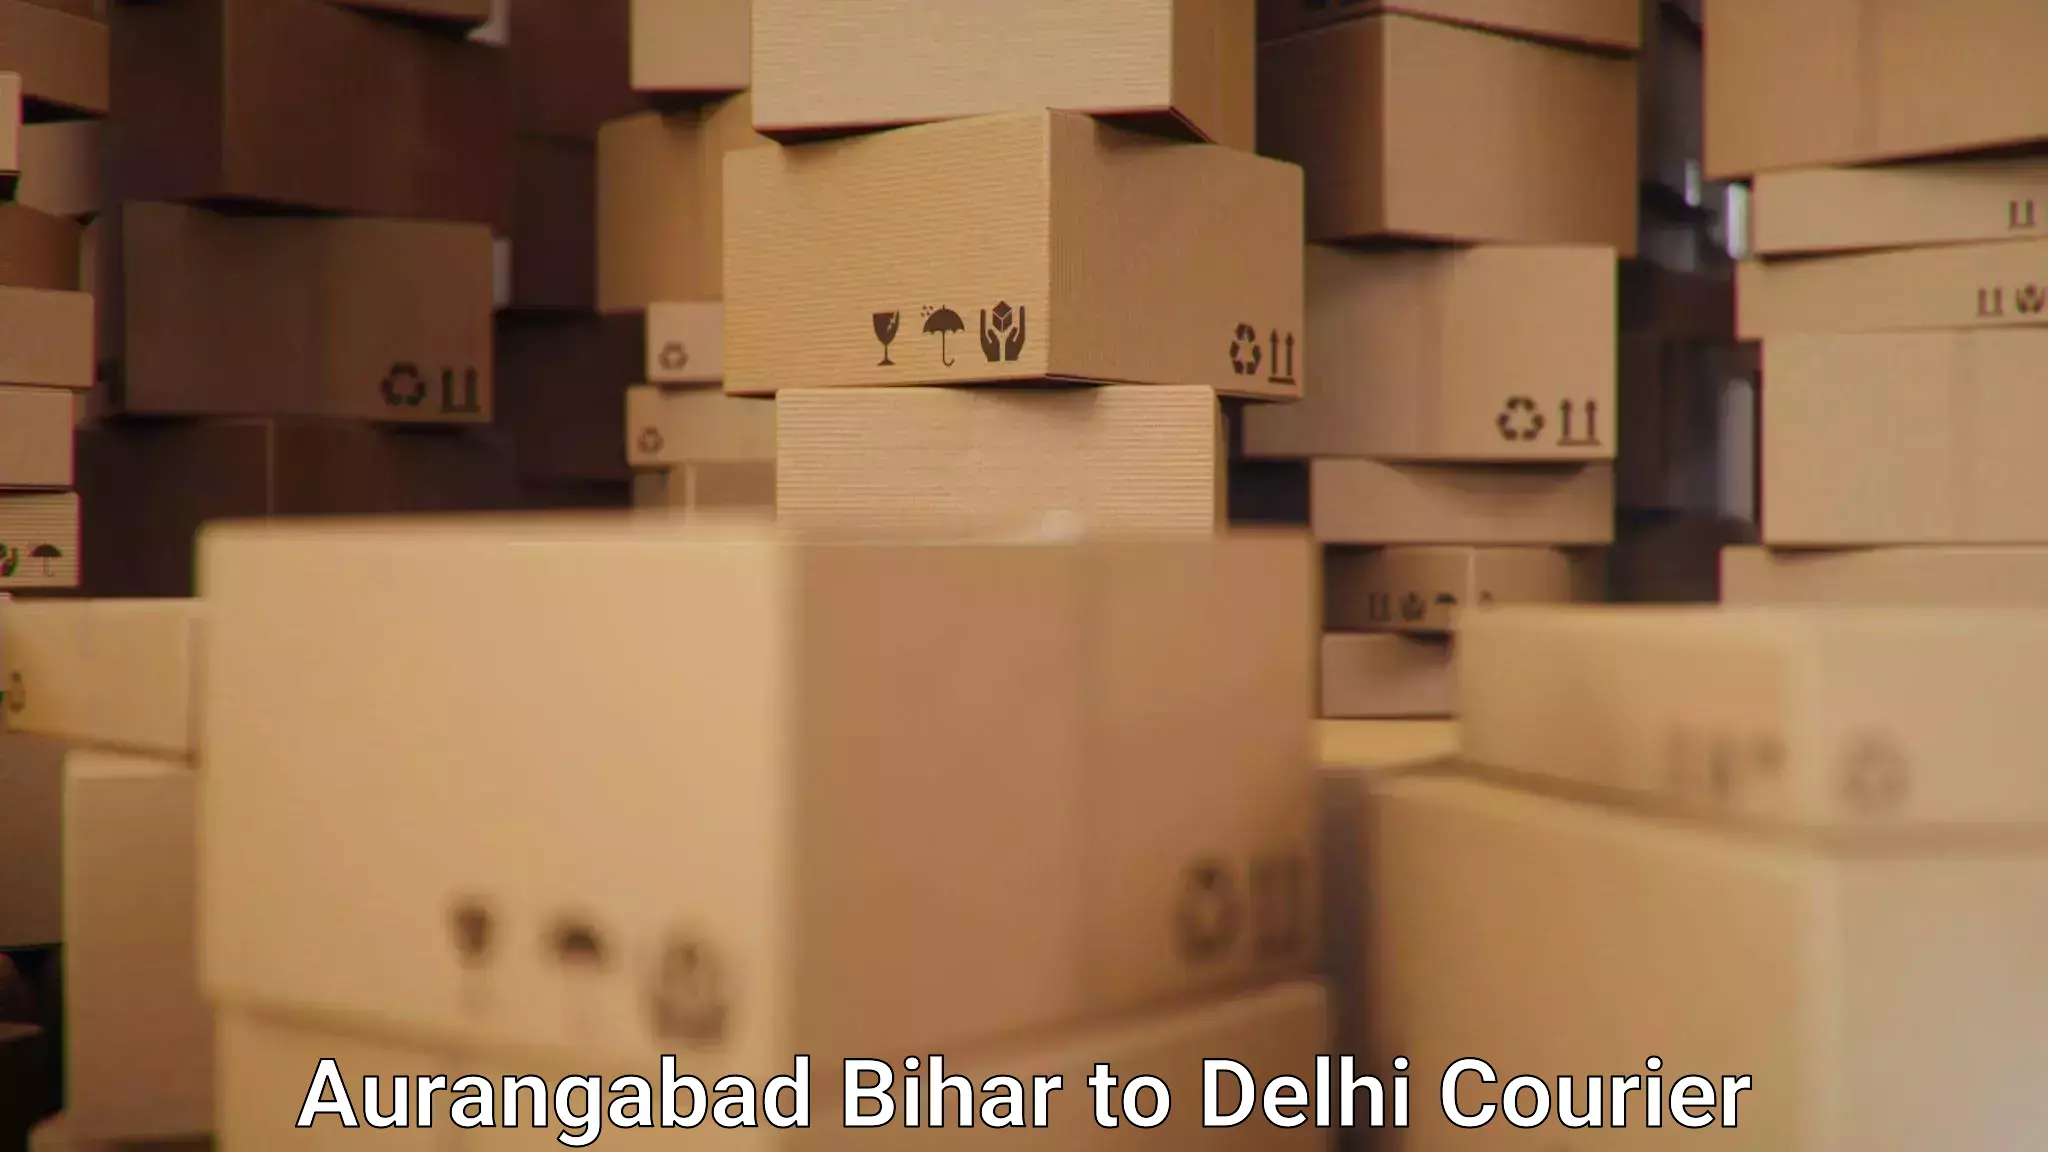 Multi-package shipping Aurangabad Bihar to Sarojini Nagar